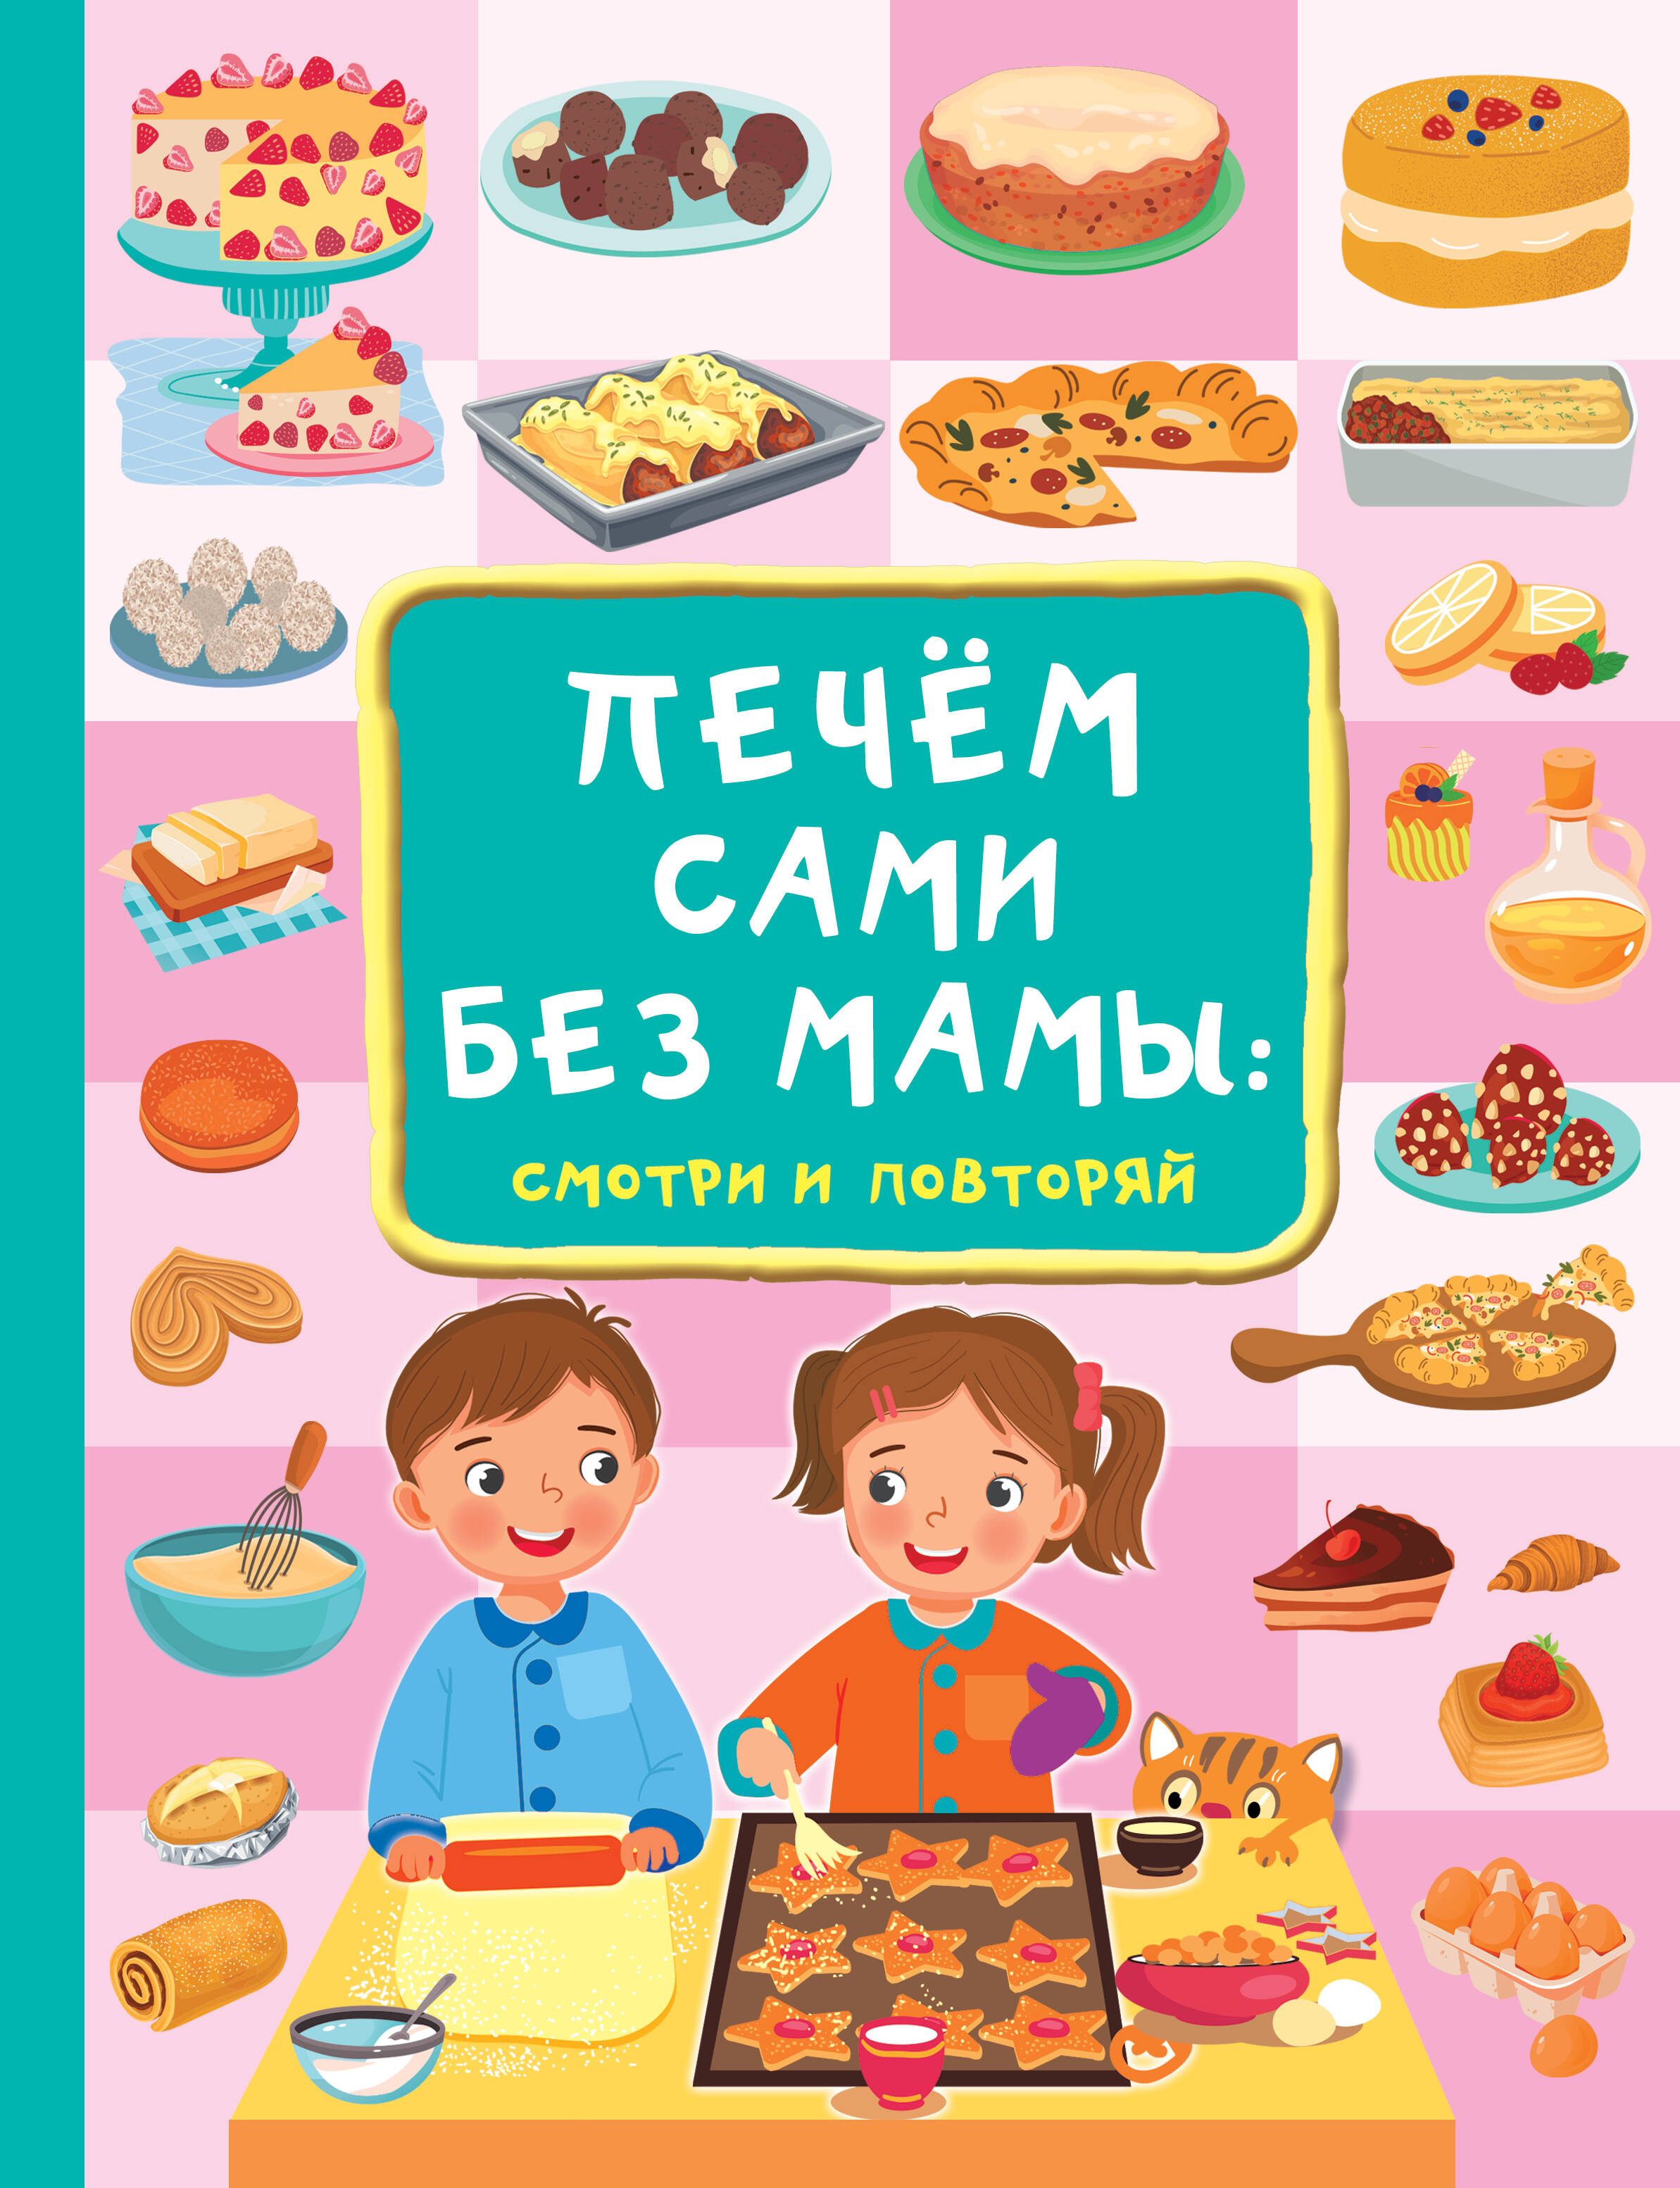 Дмитриева Валентина Геннадьевна Печём сами без мамы торты и пироги 1500 рецептов для всей семьи